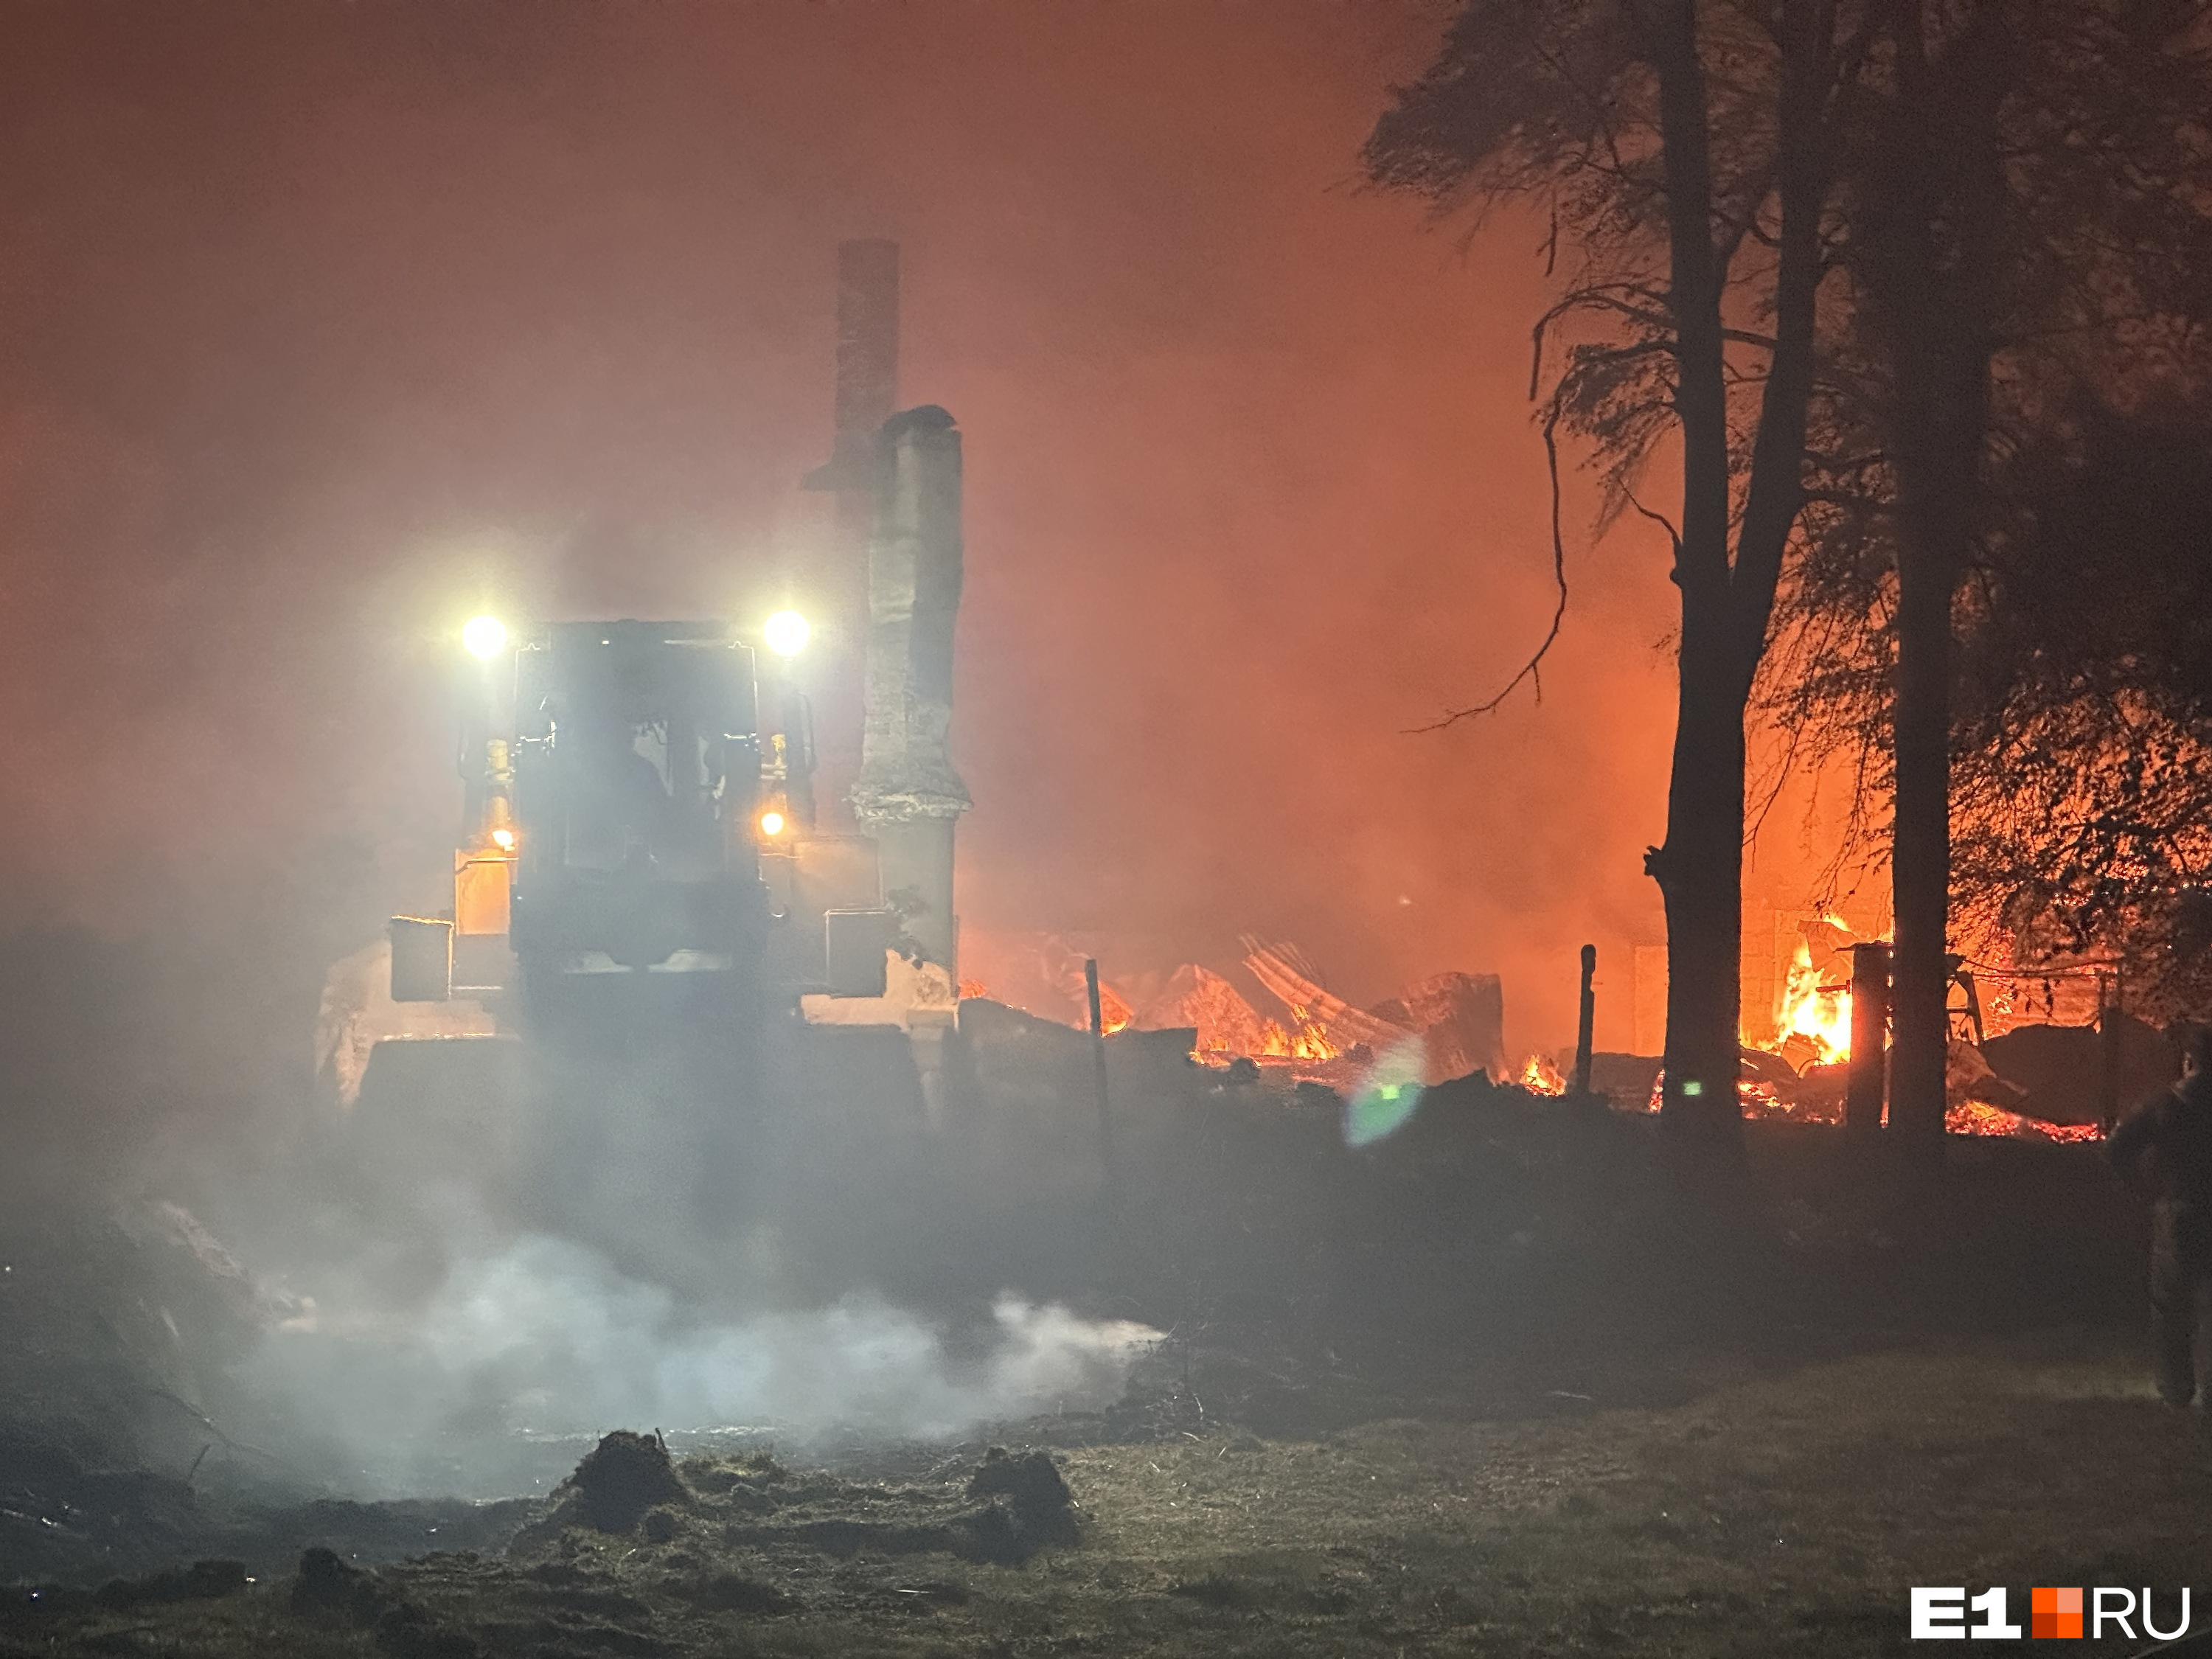 Огонь подступал с двух сторон. Репортаж из села неподалеку от Екатеринбурга, которое на глазах уничтожал страшный пожар